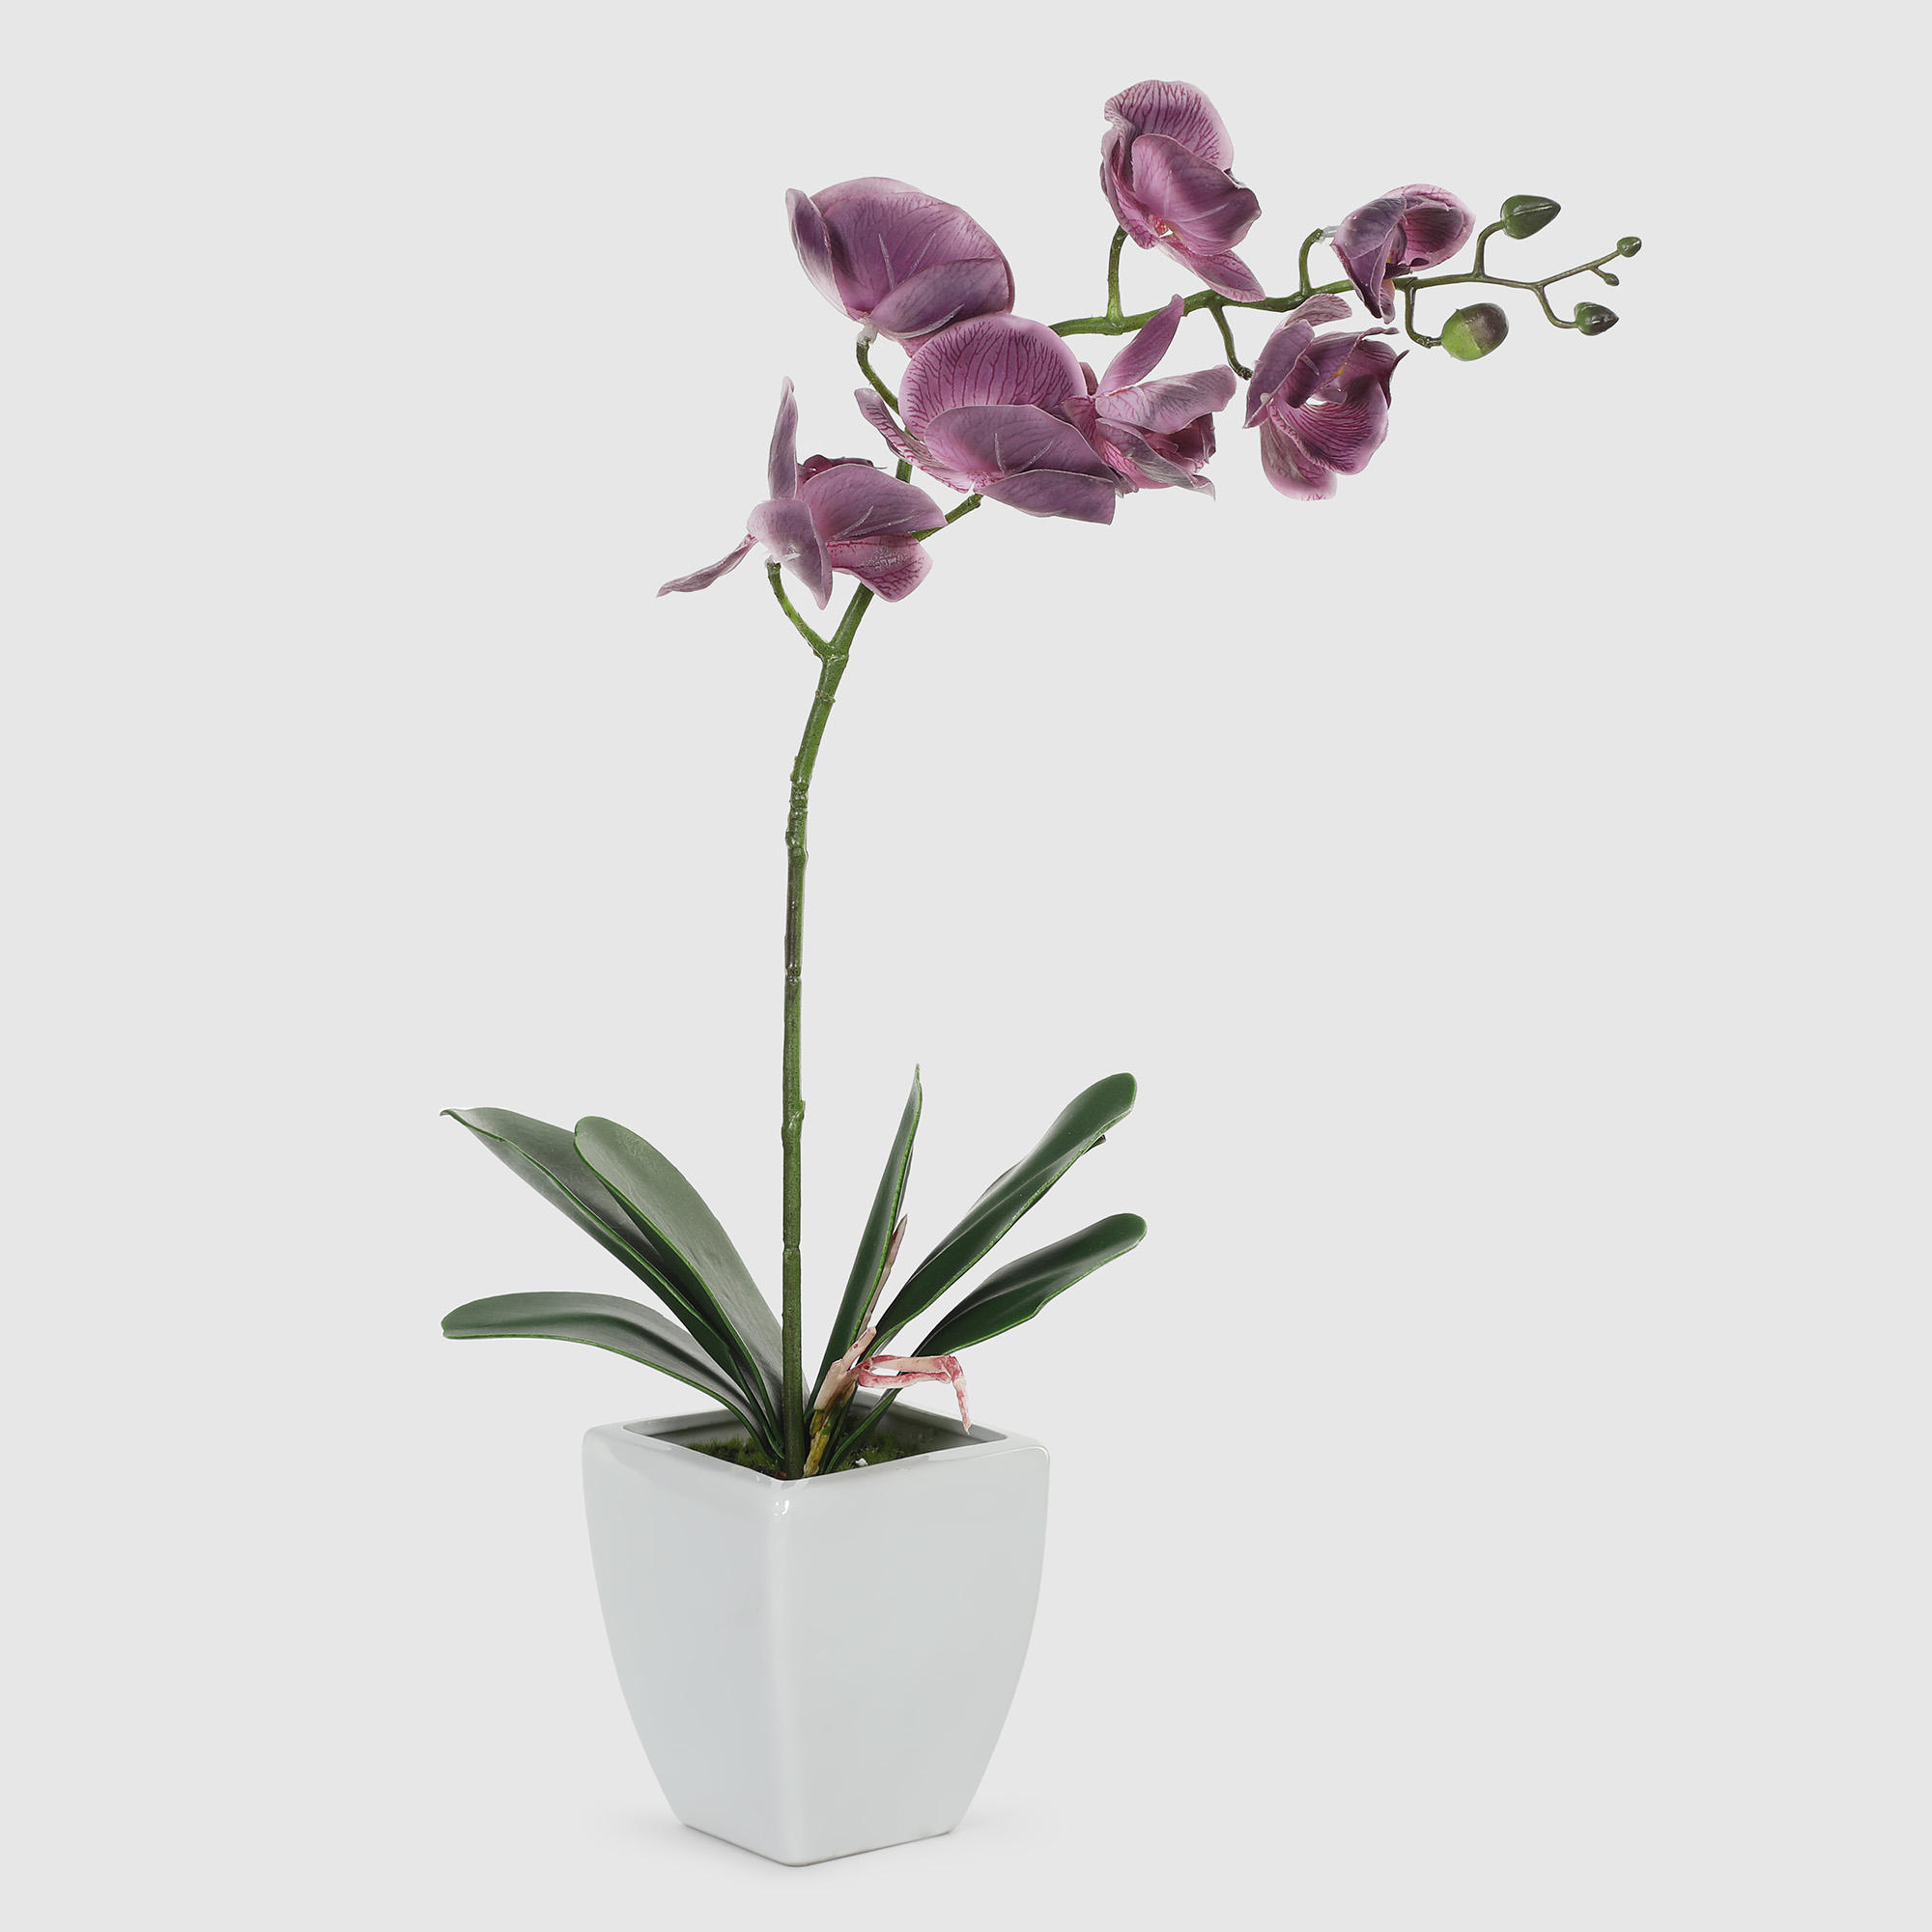 Орхидея в белом кашпо Конэко-О 57210159185 60 см орхидея фаленопсис конэко о в кашпо 70 см